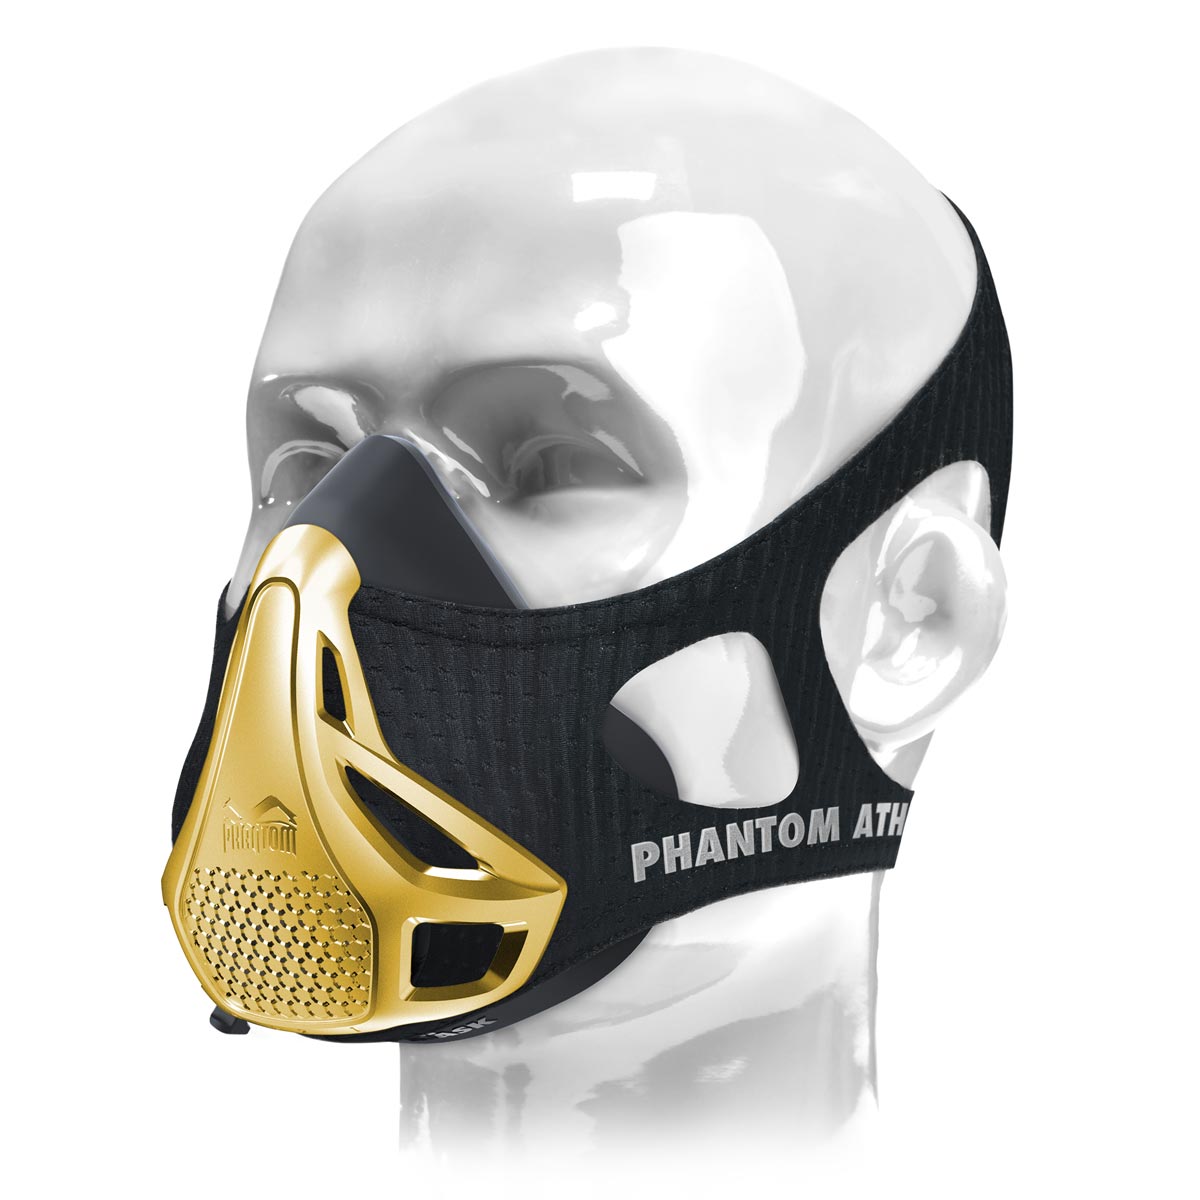 La máscara de entrenamiento Phantom . El original. Patentado y premiado para llevar tu fitness al siguiente nivel. Ahora en una edición dorada limitada.